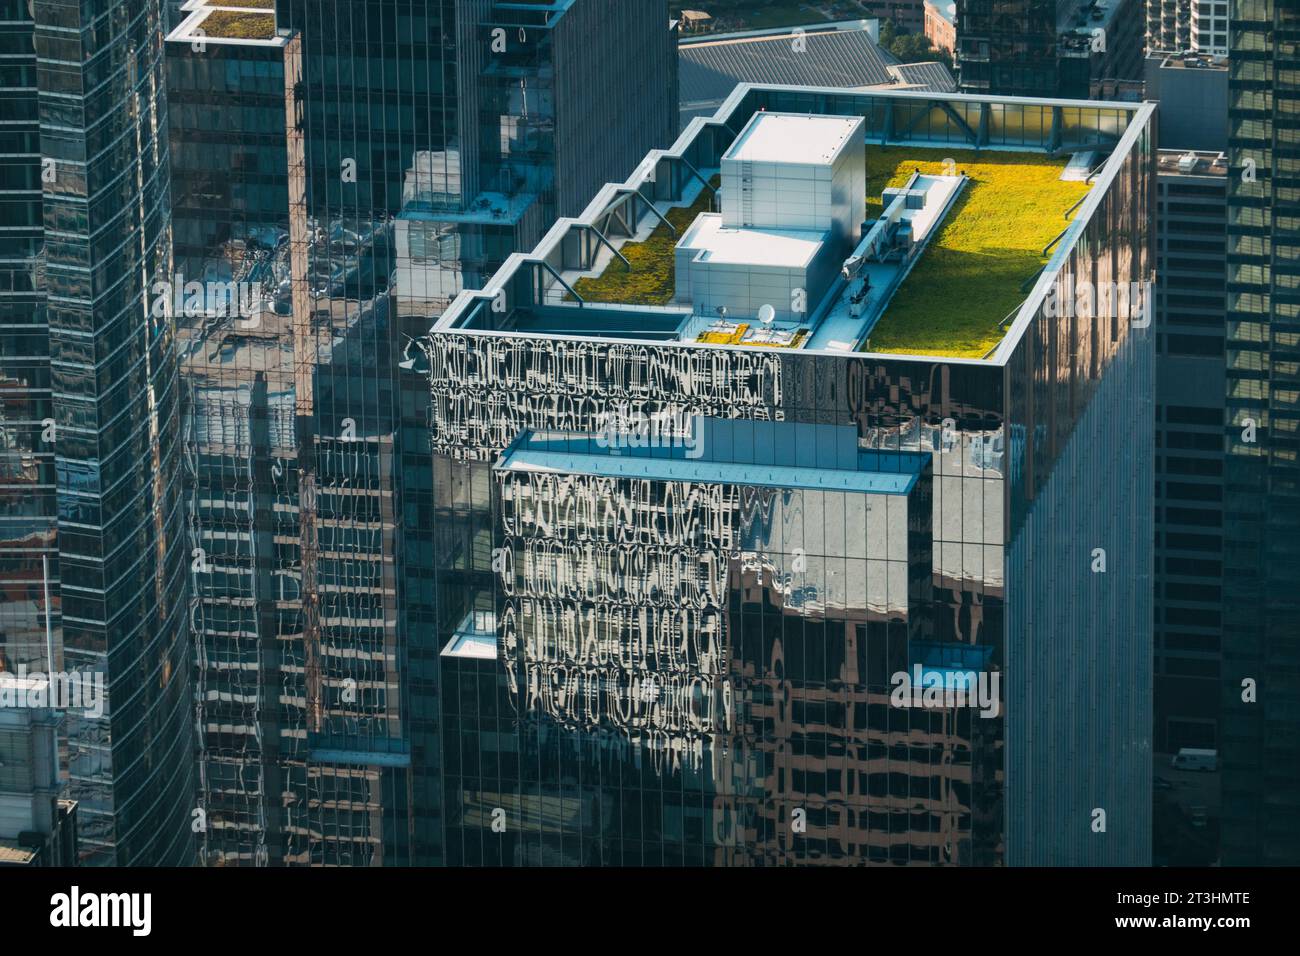 Der Bank of America Tower zeichnet sich durch sein umweltfreundliches Dach und reflektierendes Glas aus. Chicago, Usa Stockfoto